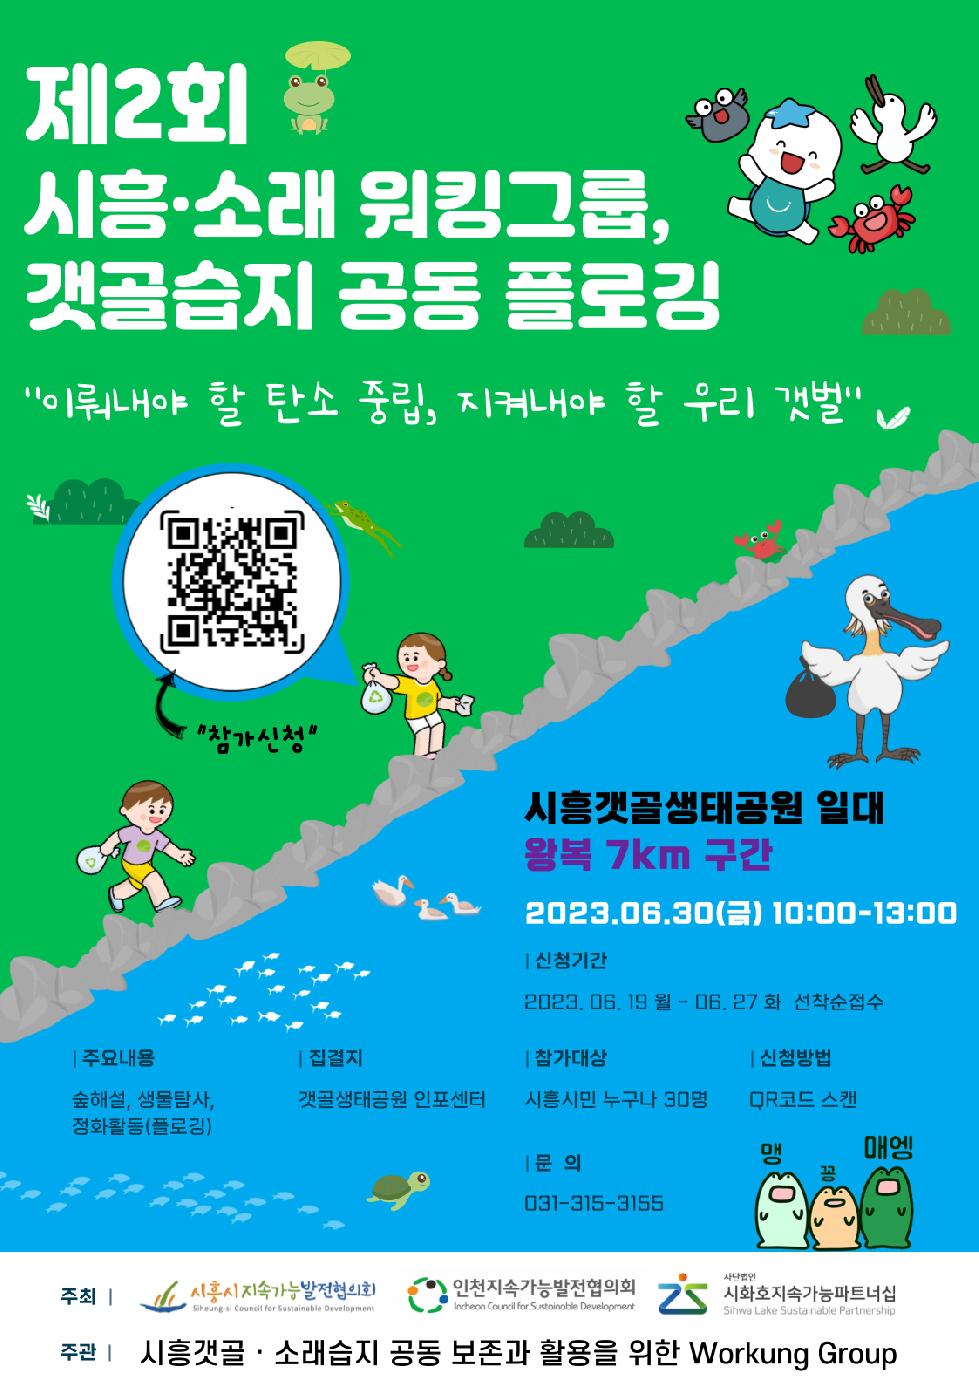 시흥시지속가능발전협의회,  시흥 갯골·소래 습지 환경보호 캠페인 앞장